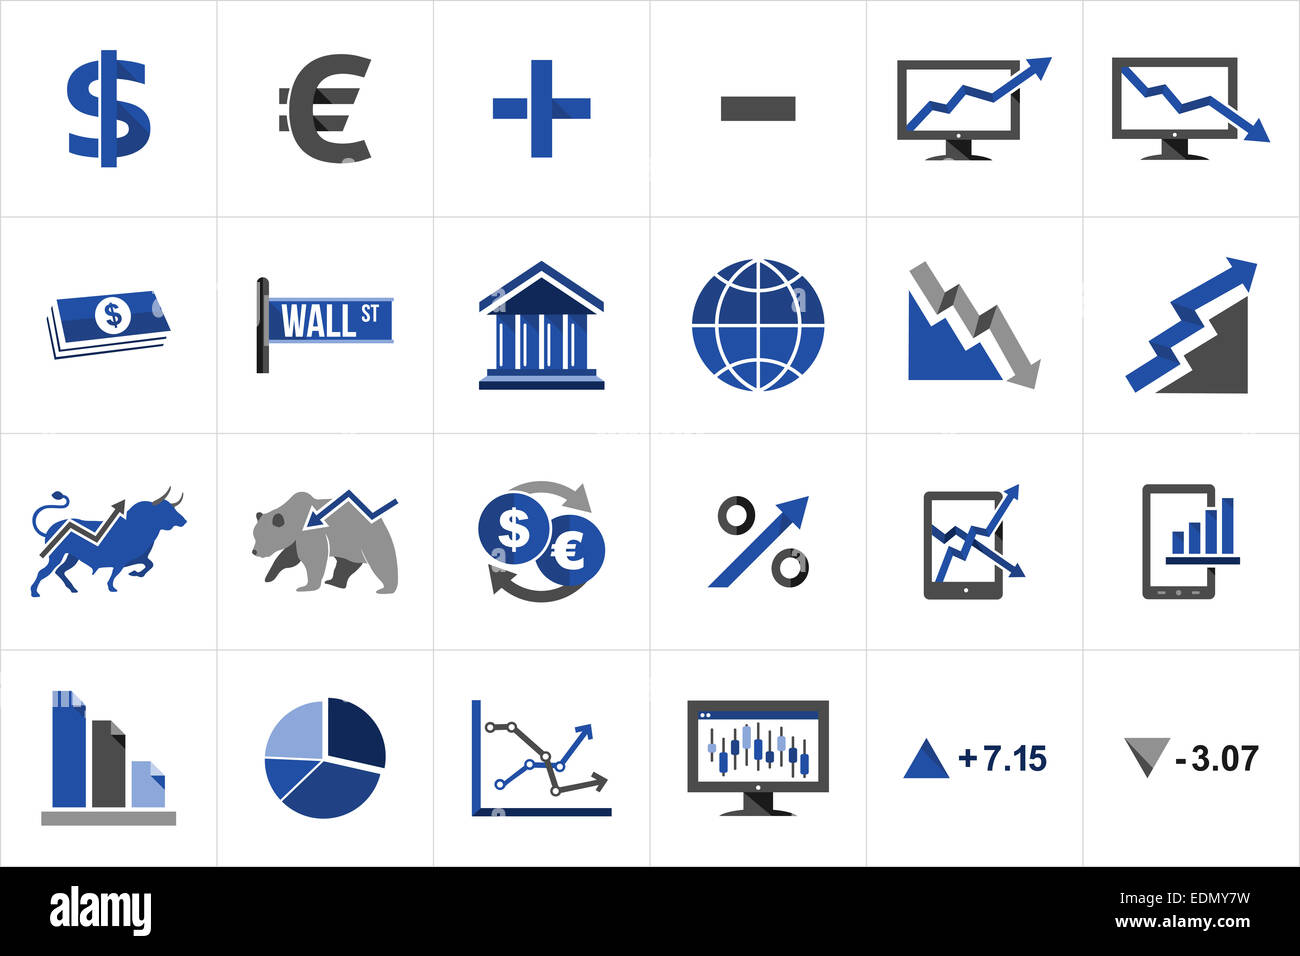 L'échange du marché boursier et des finances icon set concept illustration. Idées de site web et mise en page de l'app. Banque D'Images